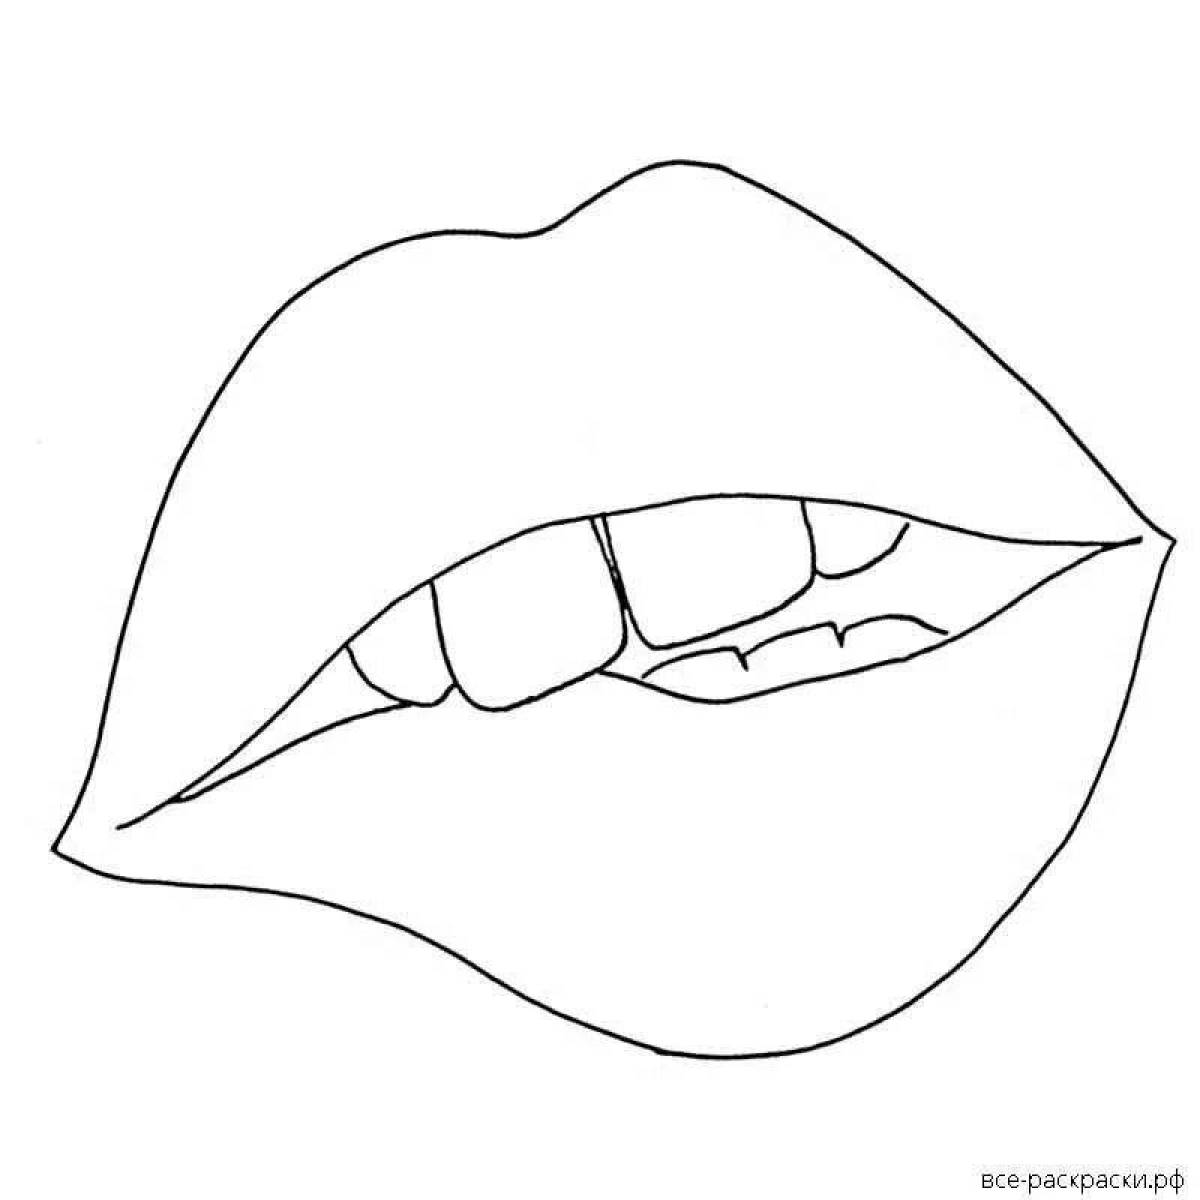 Playful lip pattern